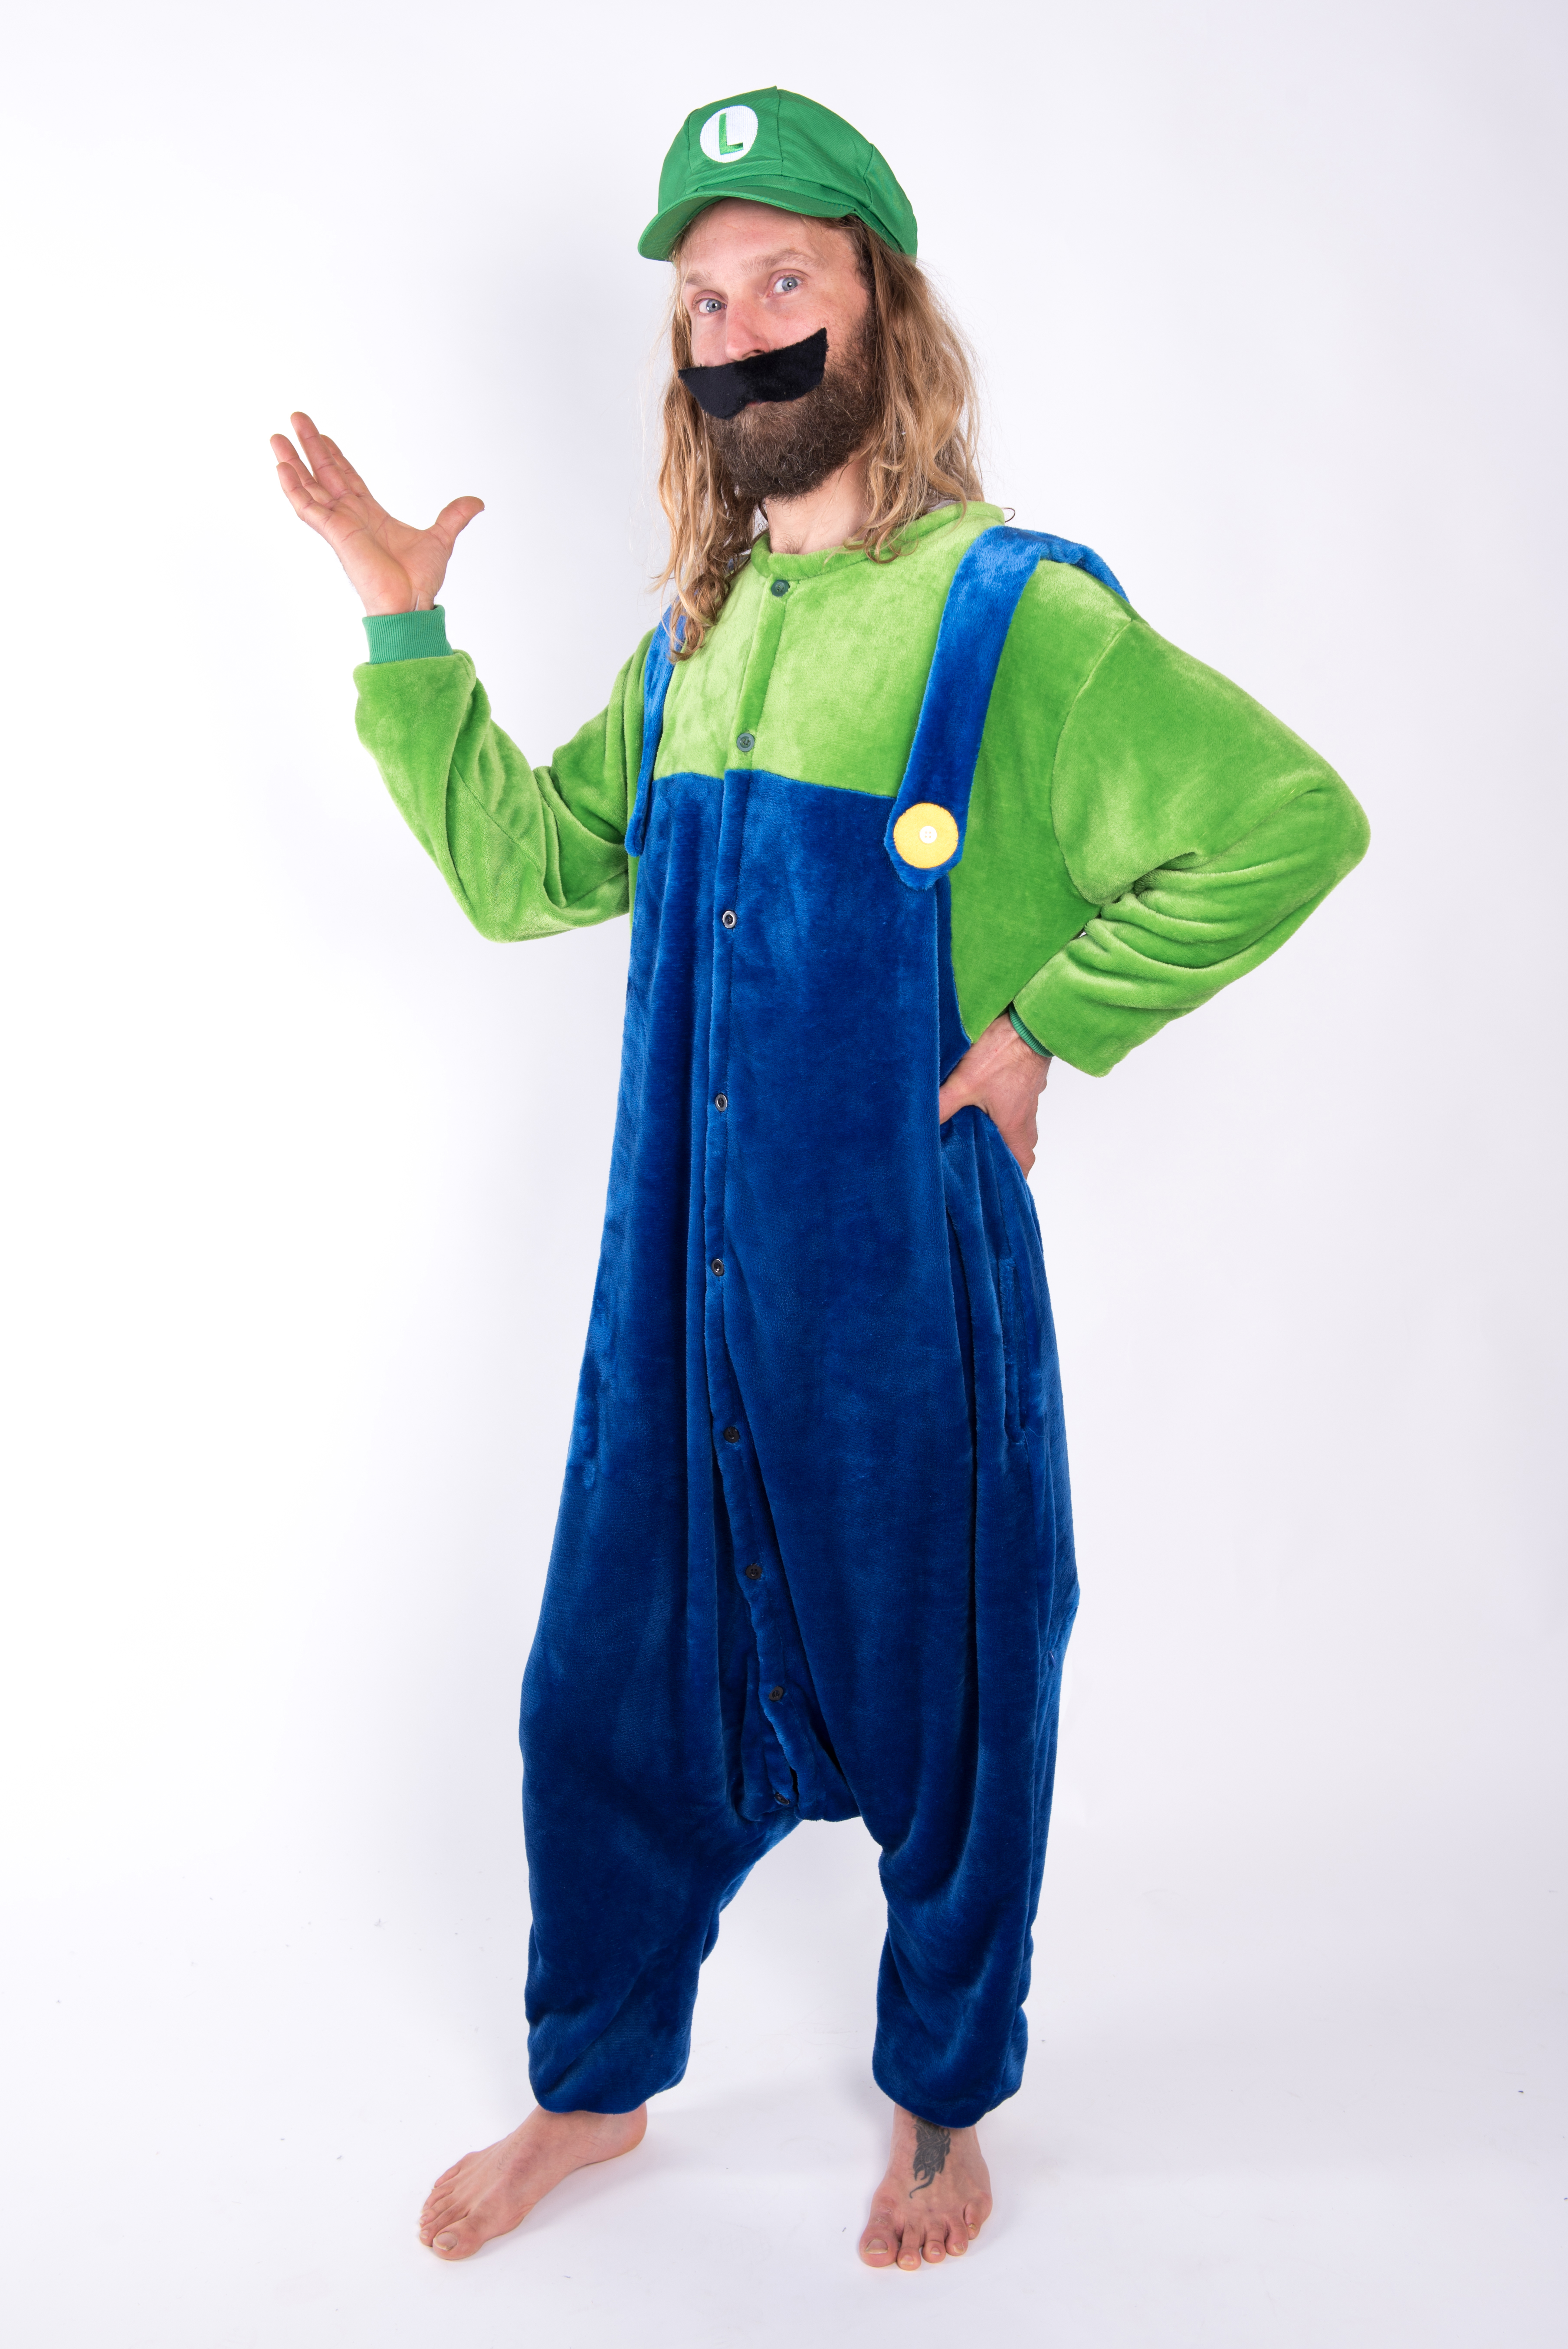 Verval Presentator Krijger Luigi onesie kostuum pak kopen? Al vanaf €29,95 bij FeestinjeBeest.nl!